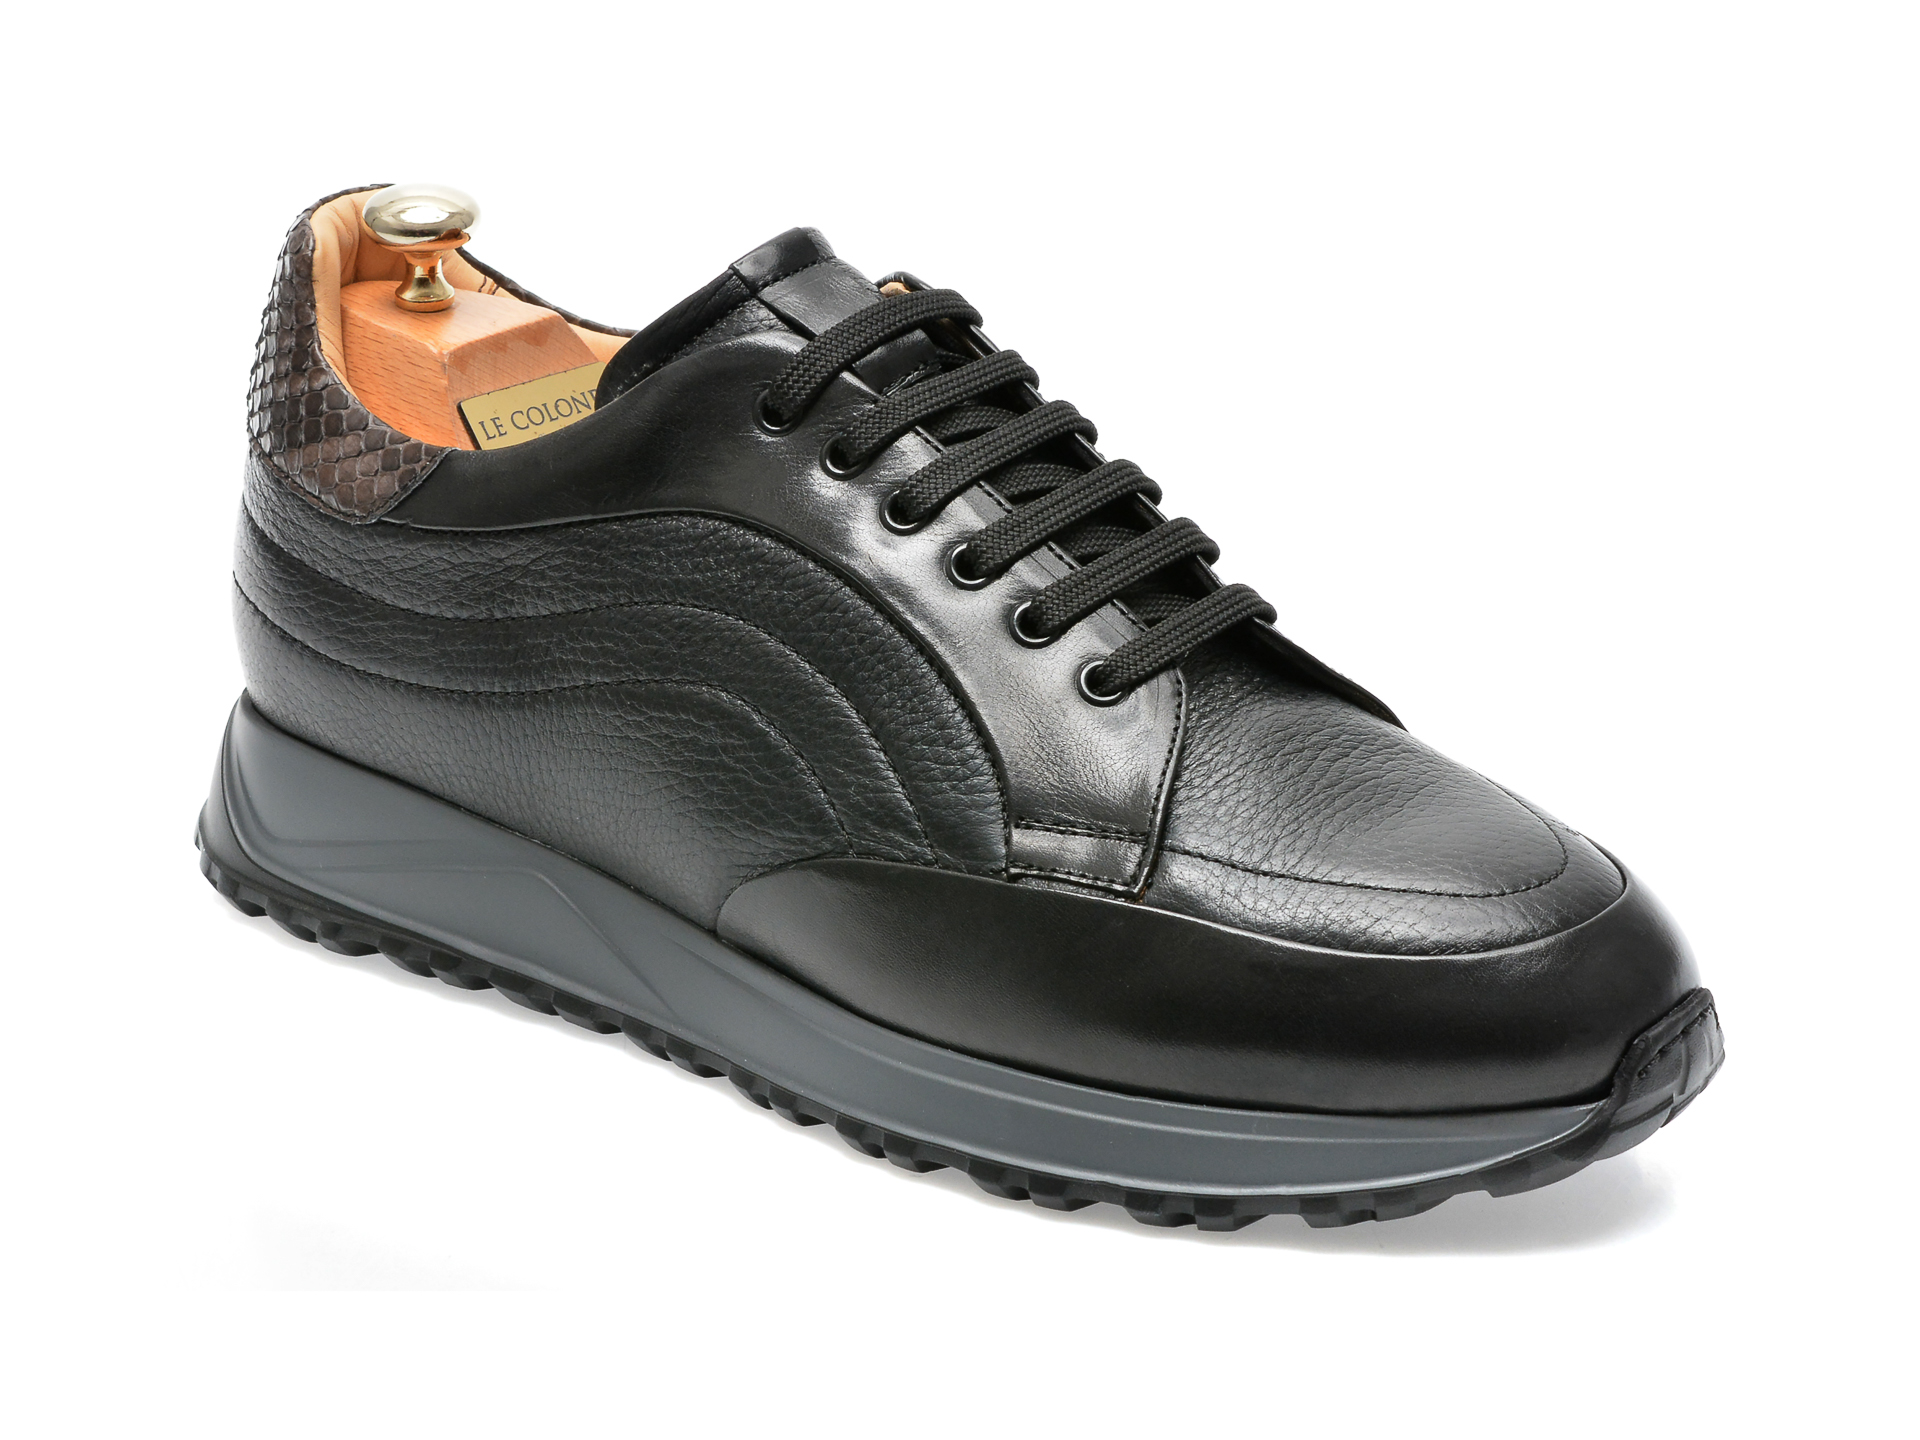 Pantofi LE COLONEL negri, 64330, din piele naturala Le Colonel